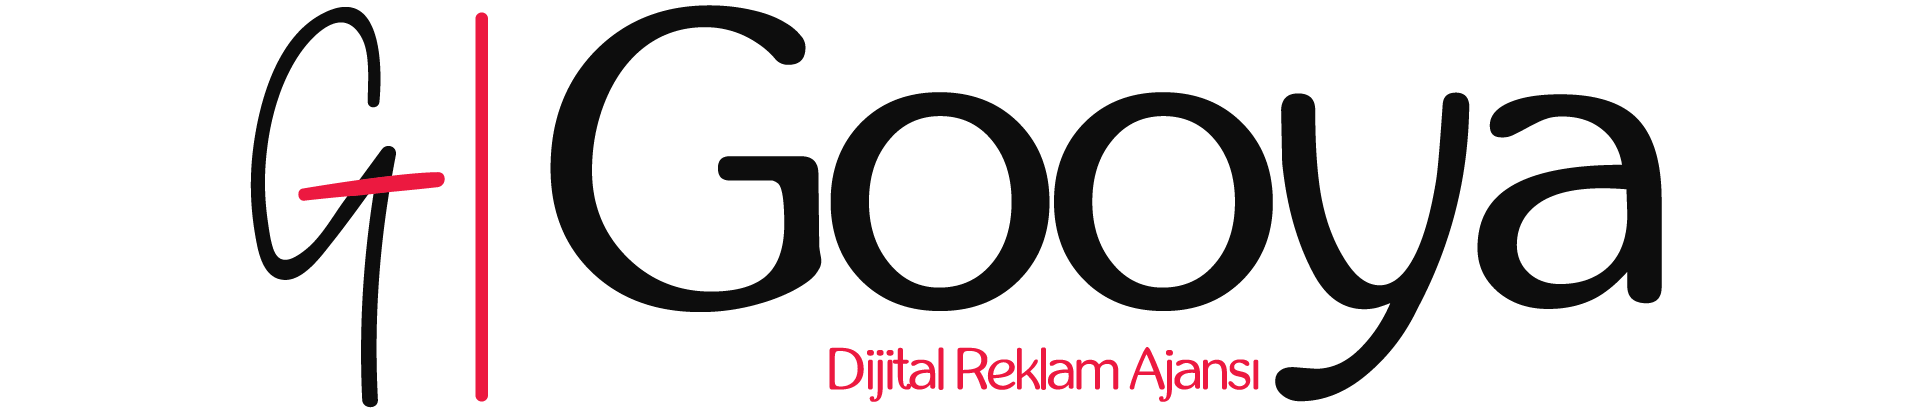 Gooya Dijital Reklam Ajansı